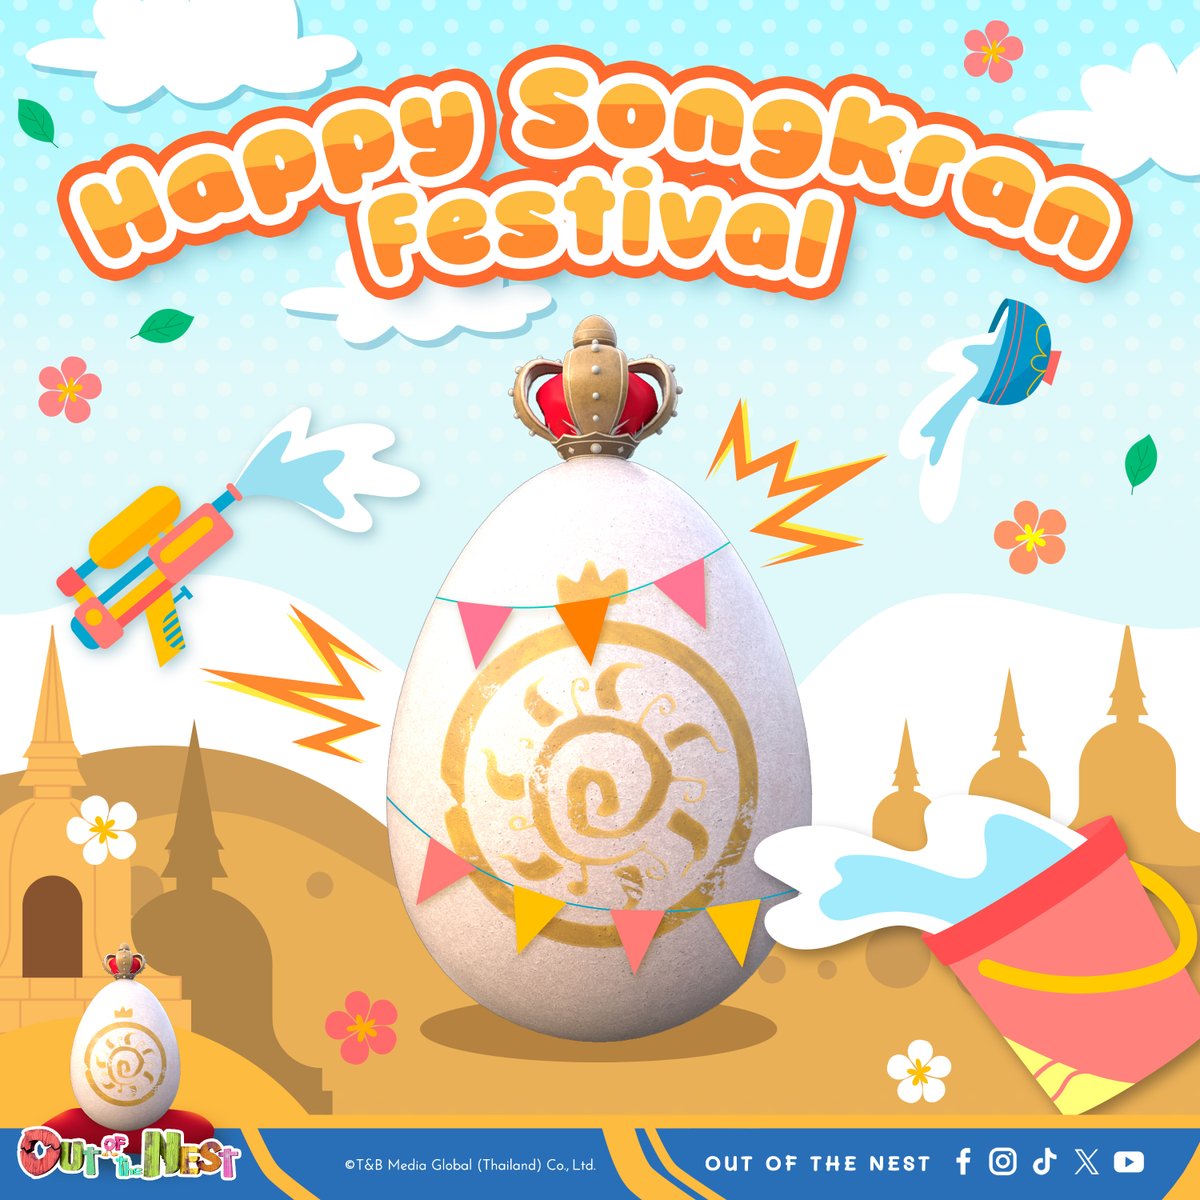 Happy Songkran Festival 💦 'สวัสดีวันปีใหม่ไทย' ขอให้สุขขี สุขขัง สุขปัง ๆ ตลอดทั้งปี ❤️ แล้วอย่าลืมมารอเจอ ขบวน #Eggหรรษา มหาสงกรานต์ กันน้า #OutOfTheNest #OOTN #TandBMediaGlobal